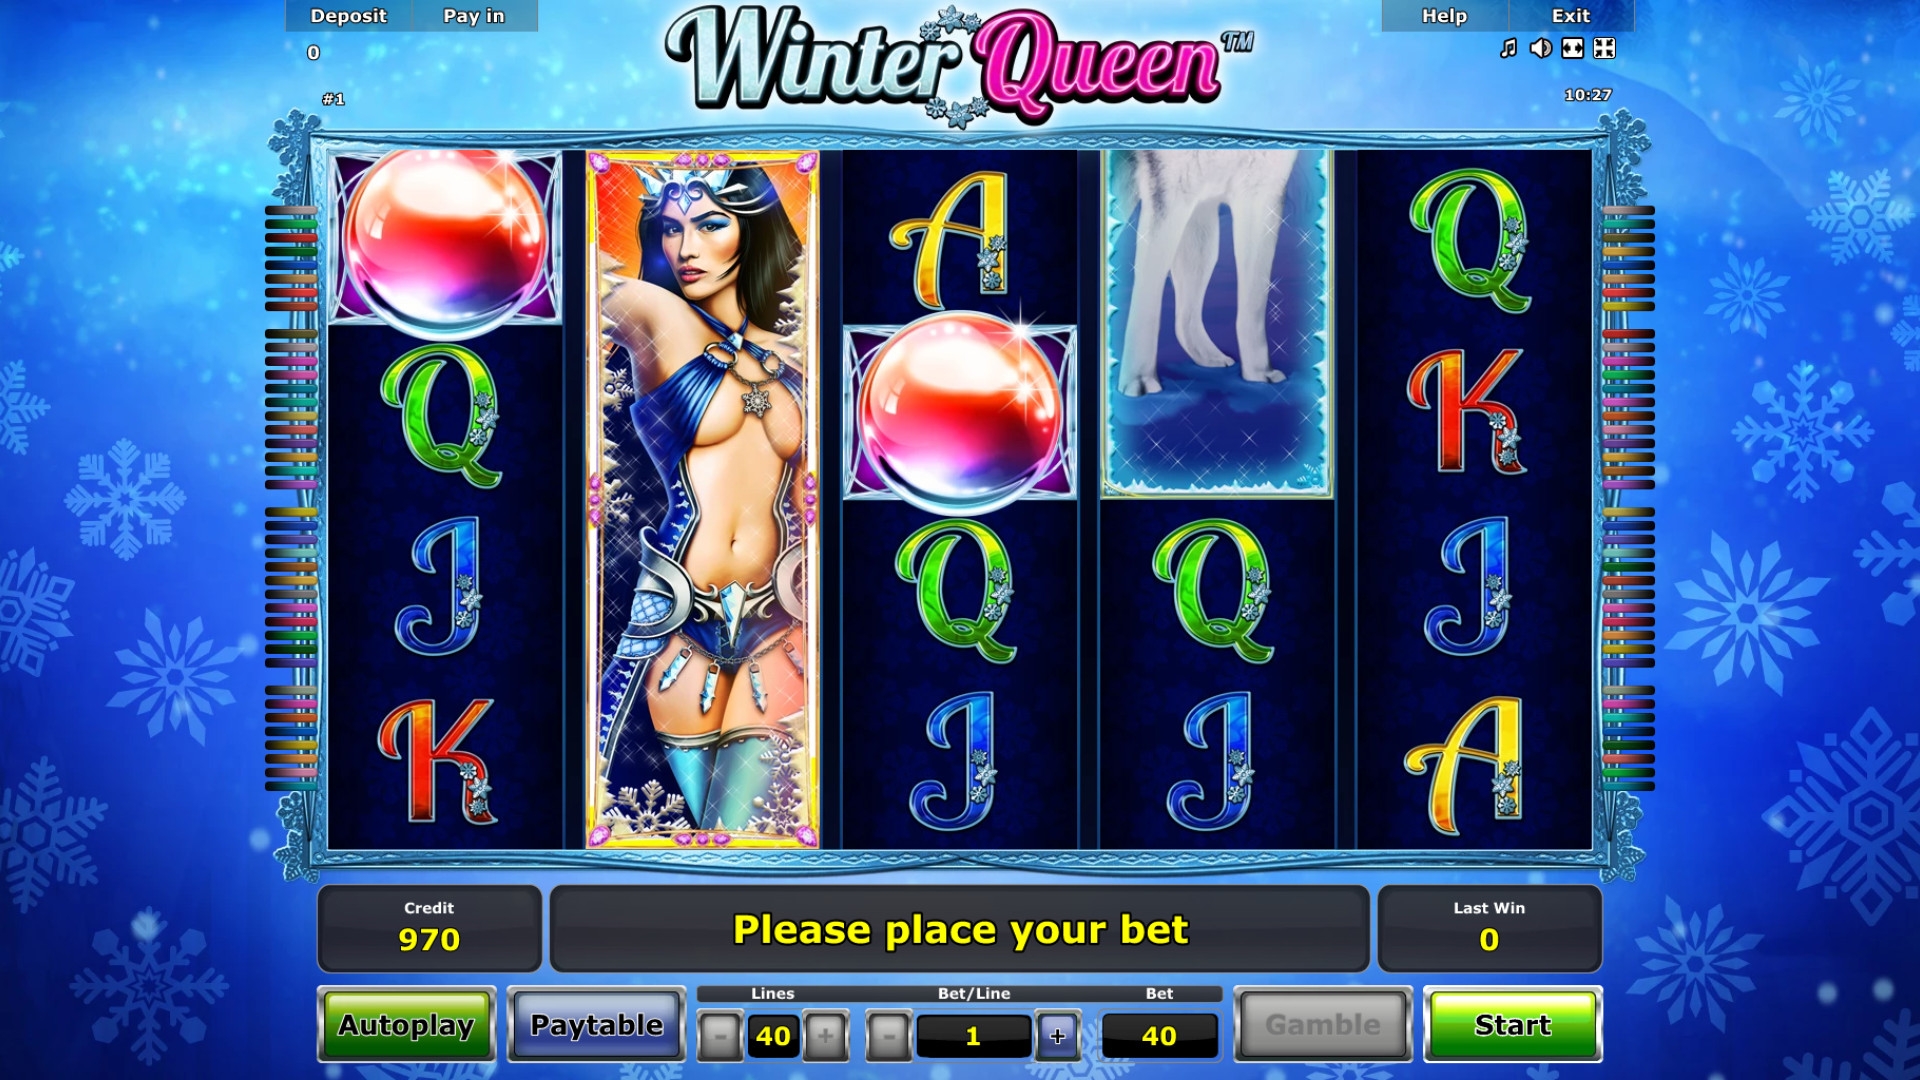 Winter Queen (Winter Queen) from category Slots